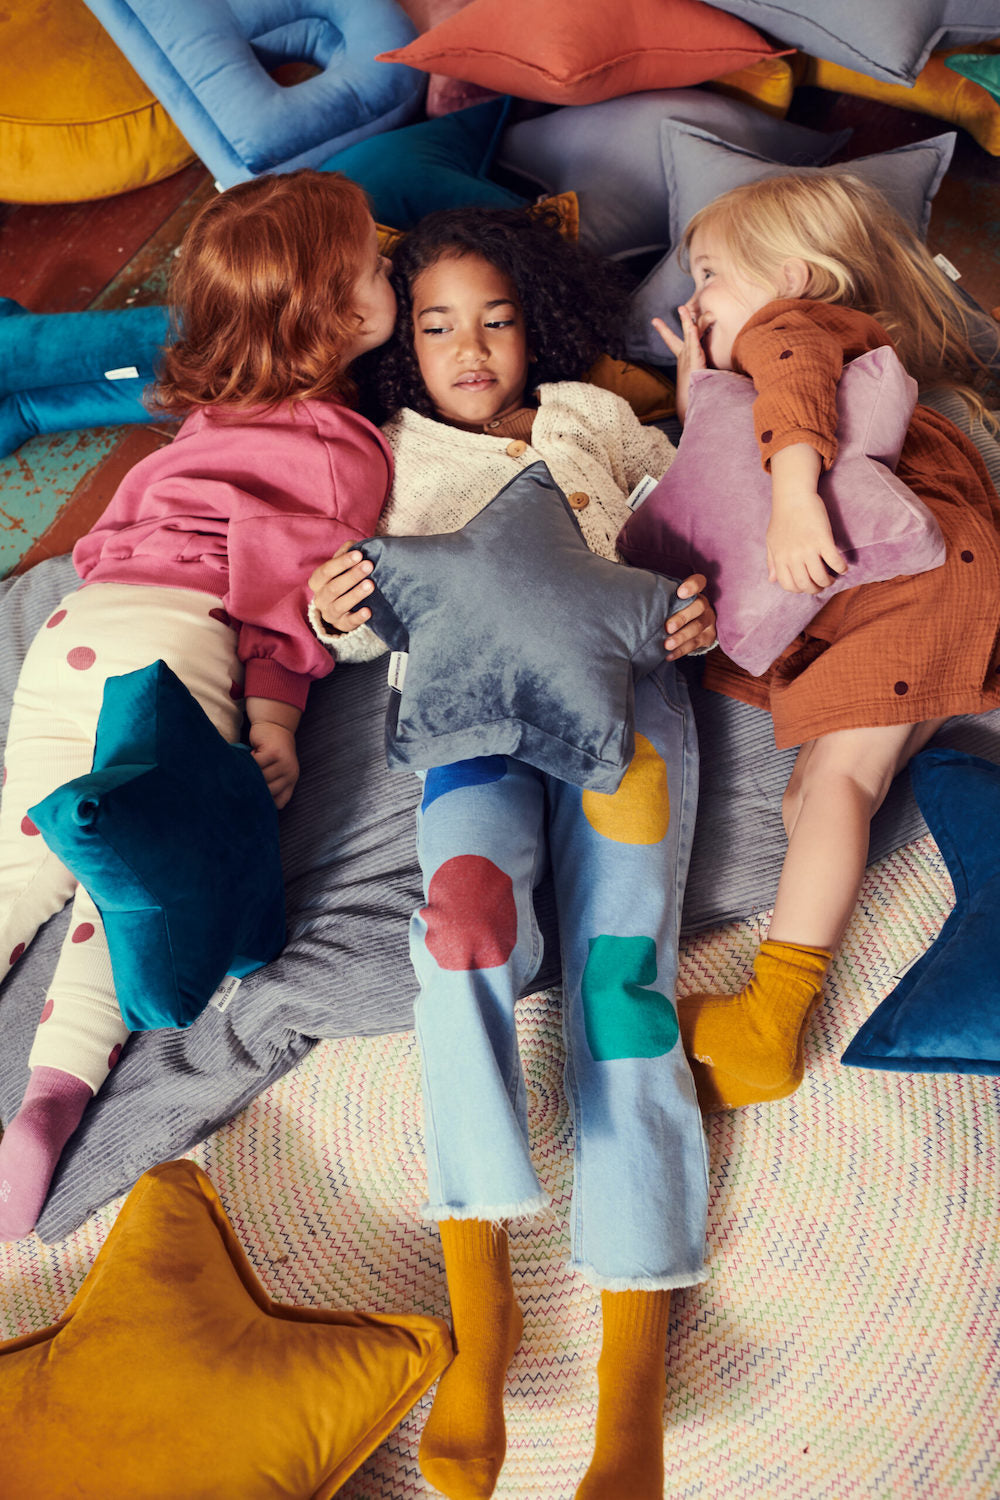 dziewczynki leżące na podłodze pośród różnych poduszek welurowych od bettys home trzymają w ręce poduszki gwiazdki welurowe